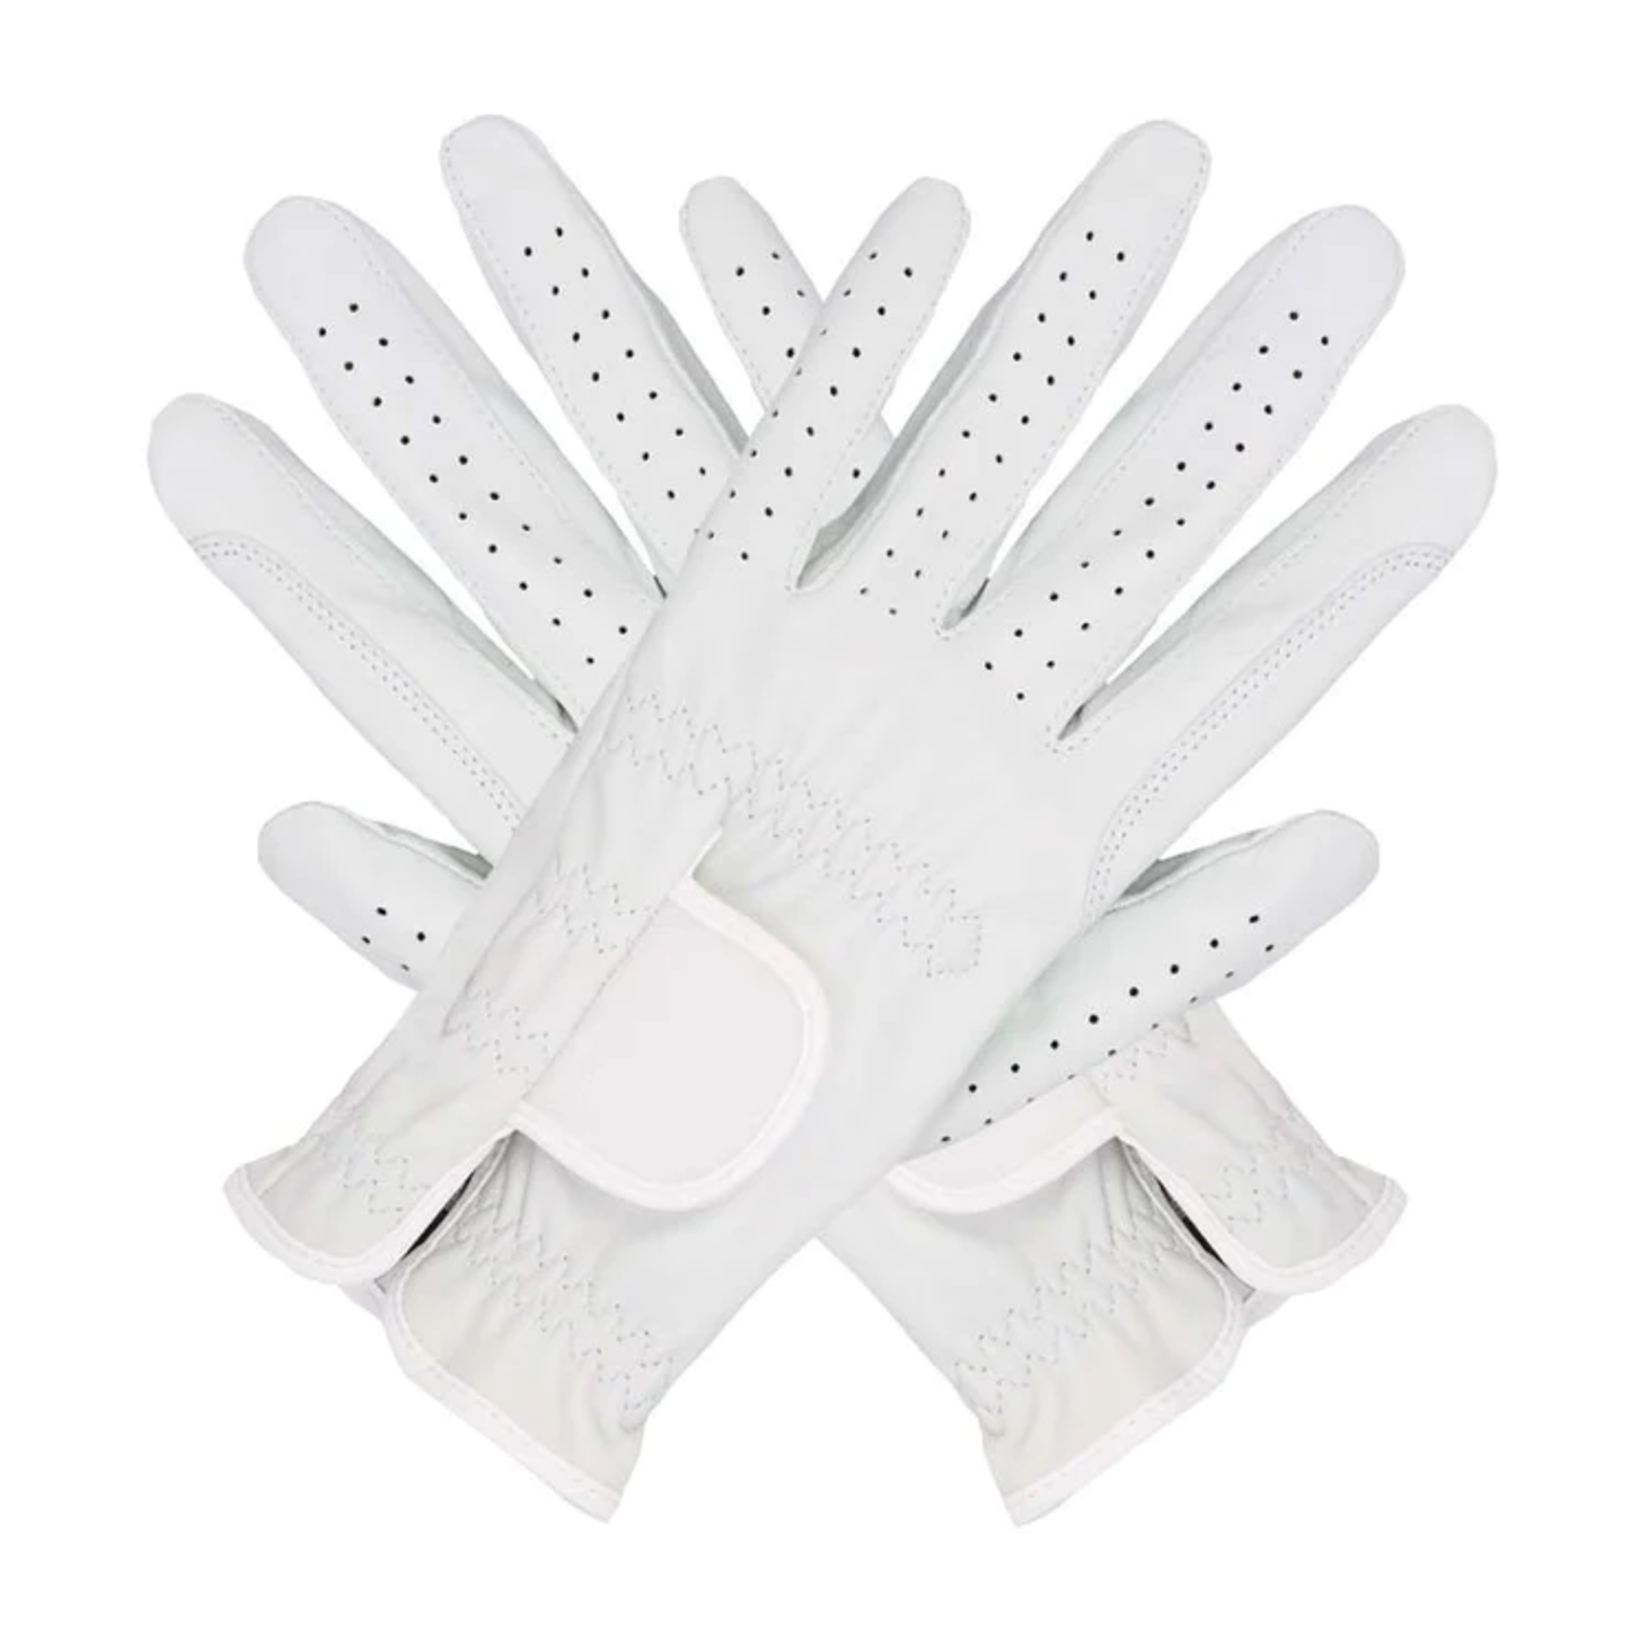 Eigen merk Hauke smidt gloves white leather